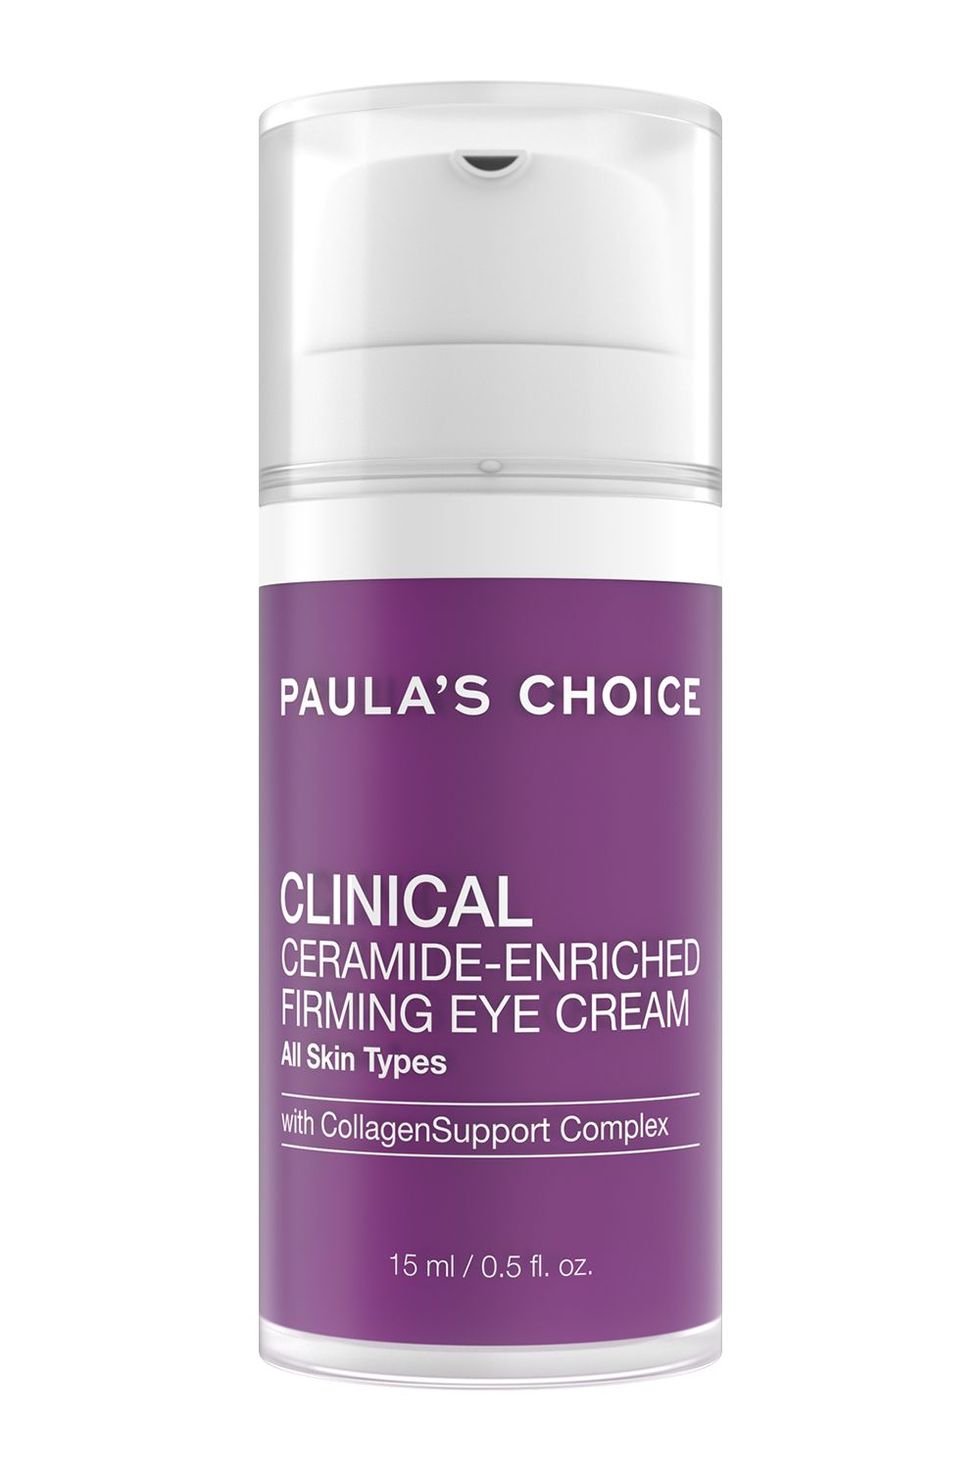 Paula's Choice Clinical Ceramide Firming Eye Cream